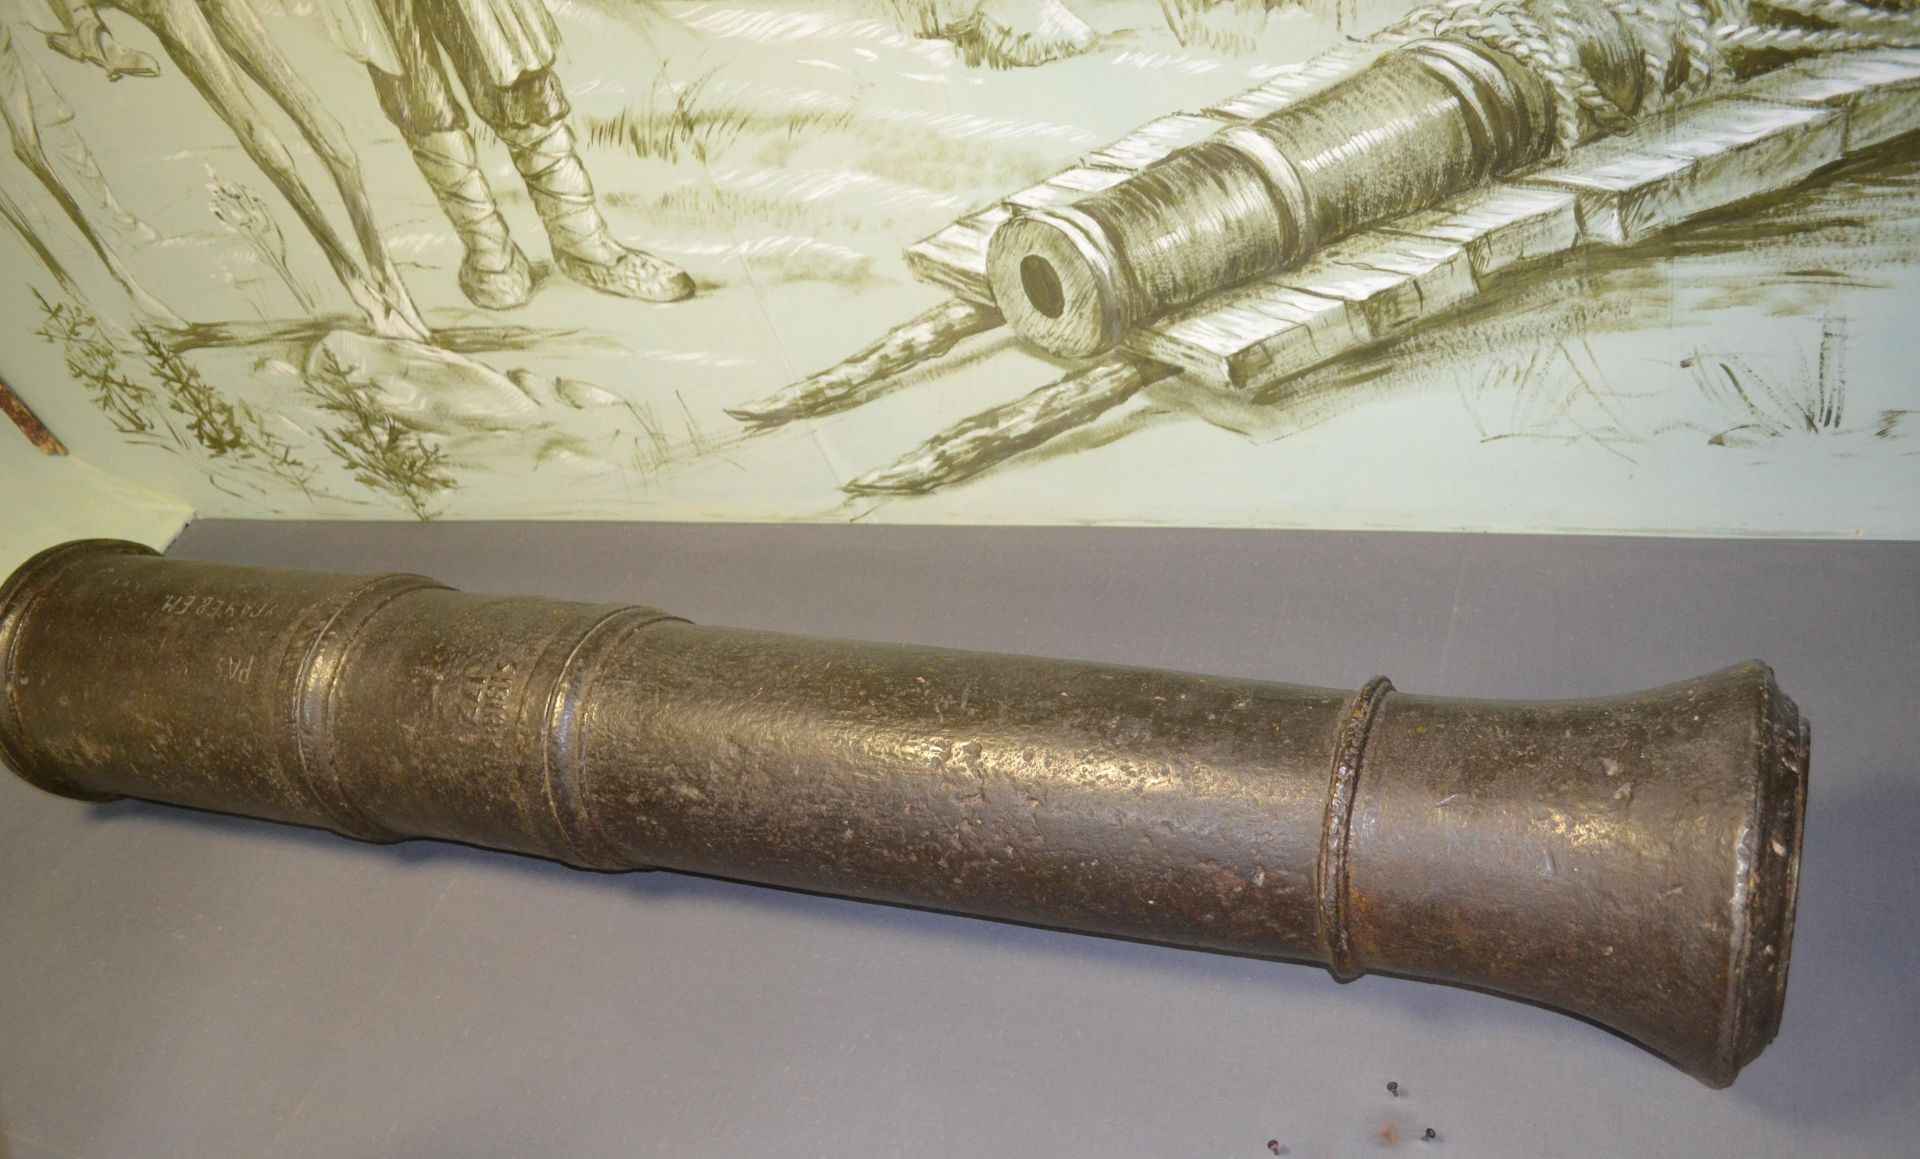 Пугачевская пушка – визитная карточка Бугульминского краеведческого музея